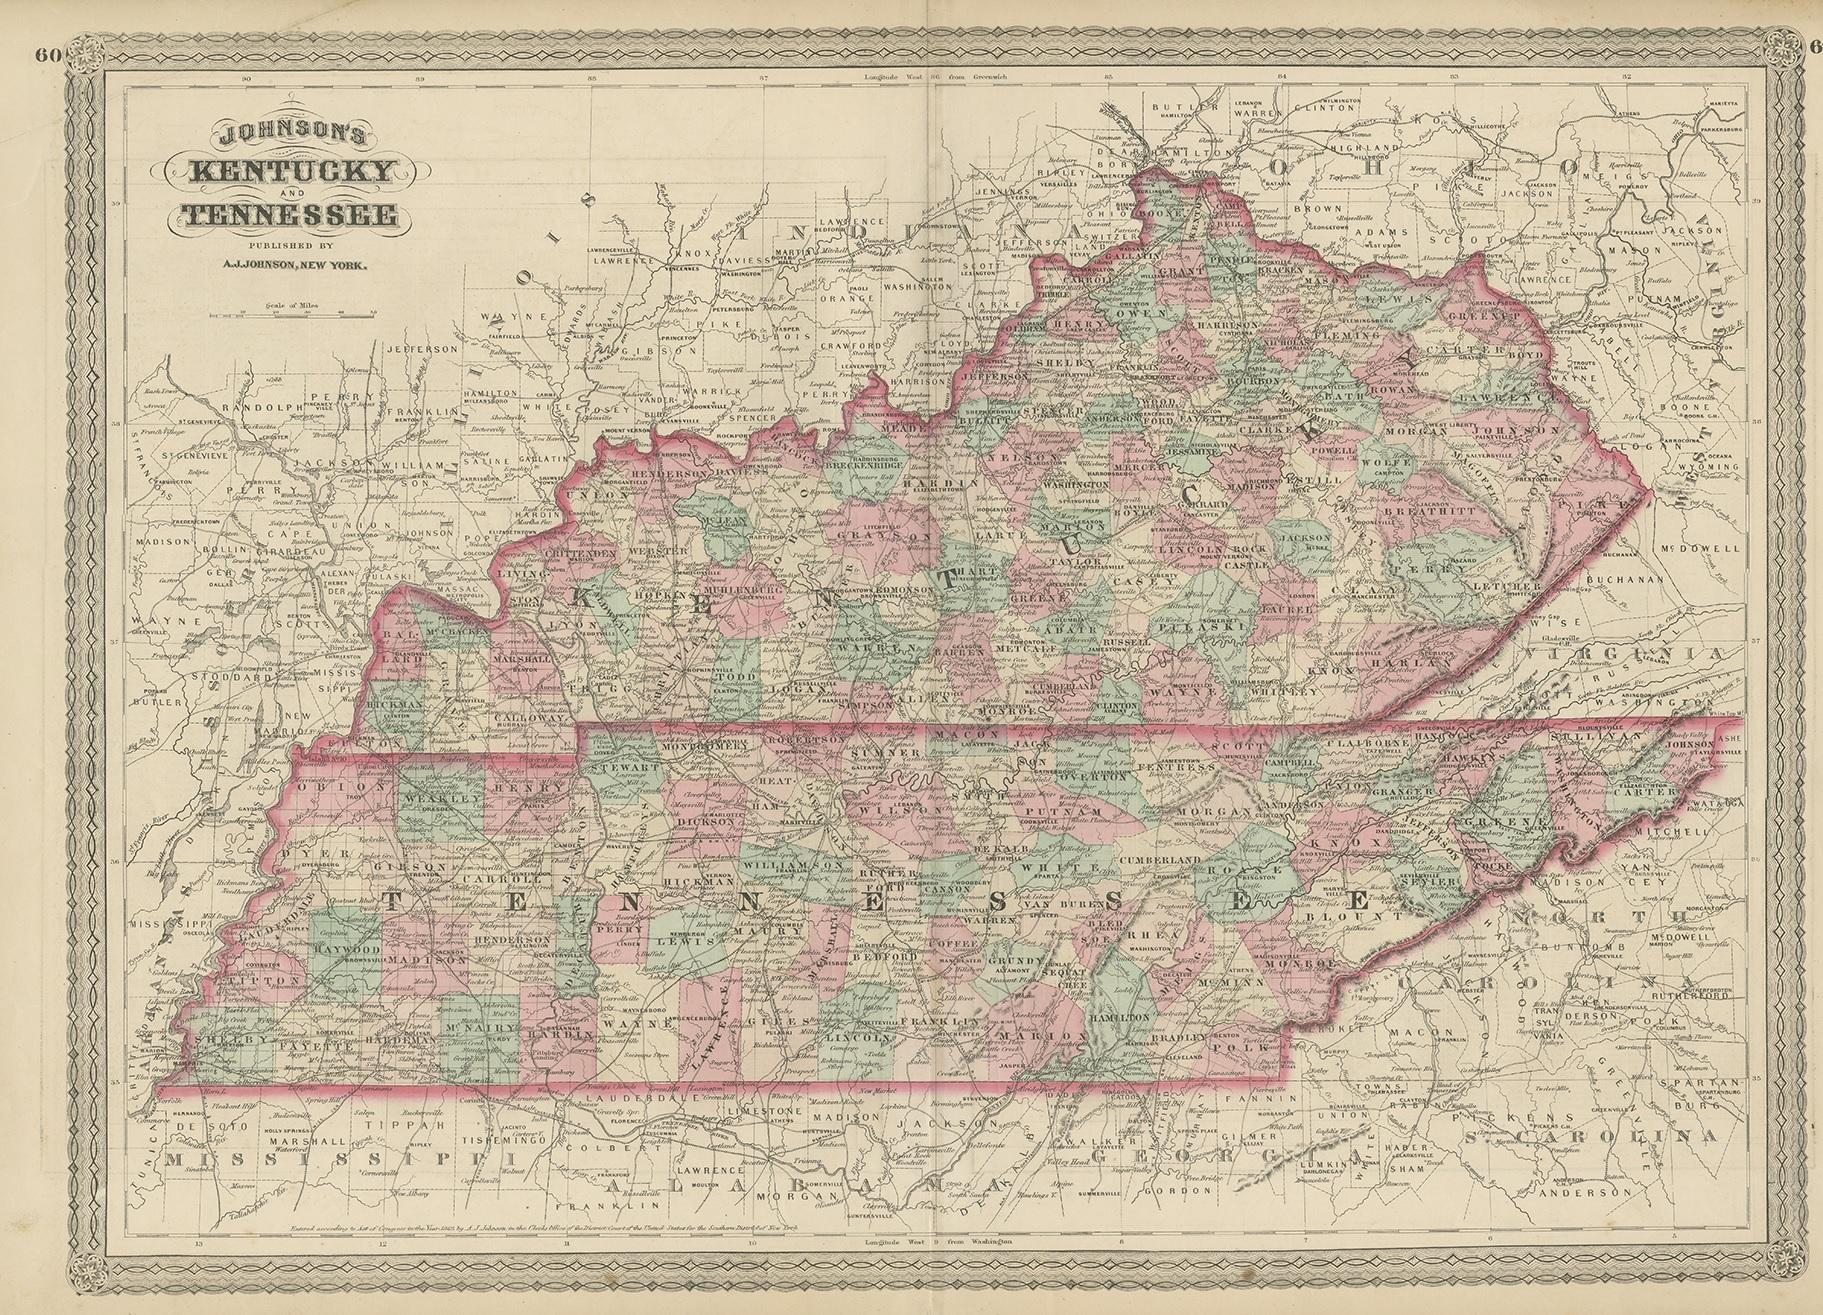 Antike Karte mit dem Titel 'Johnson's Kentucky (..)'. Original-Karte von Kentucky und Tennessee. Diese Karte stammt aus 